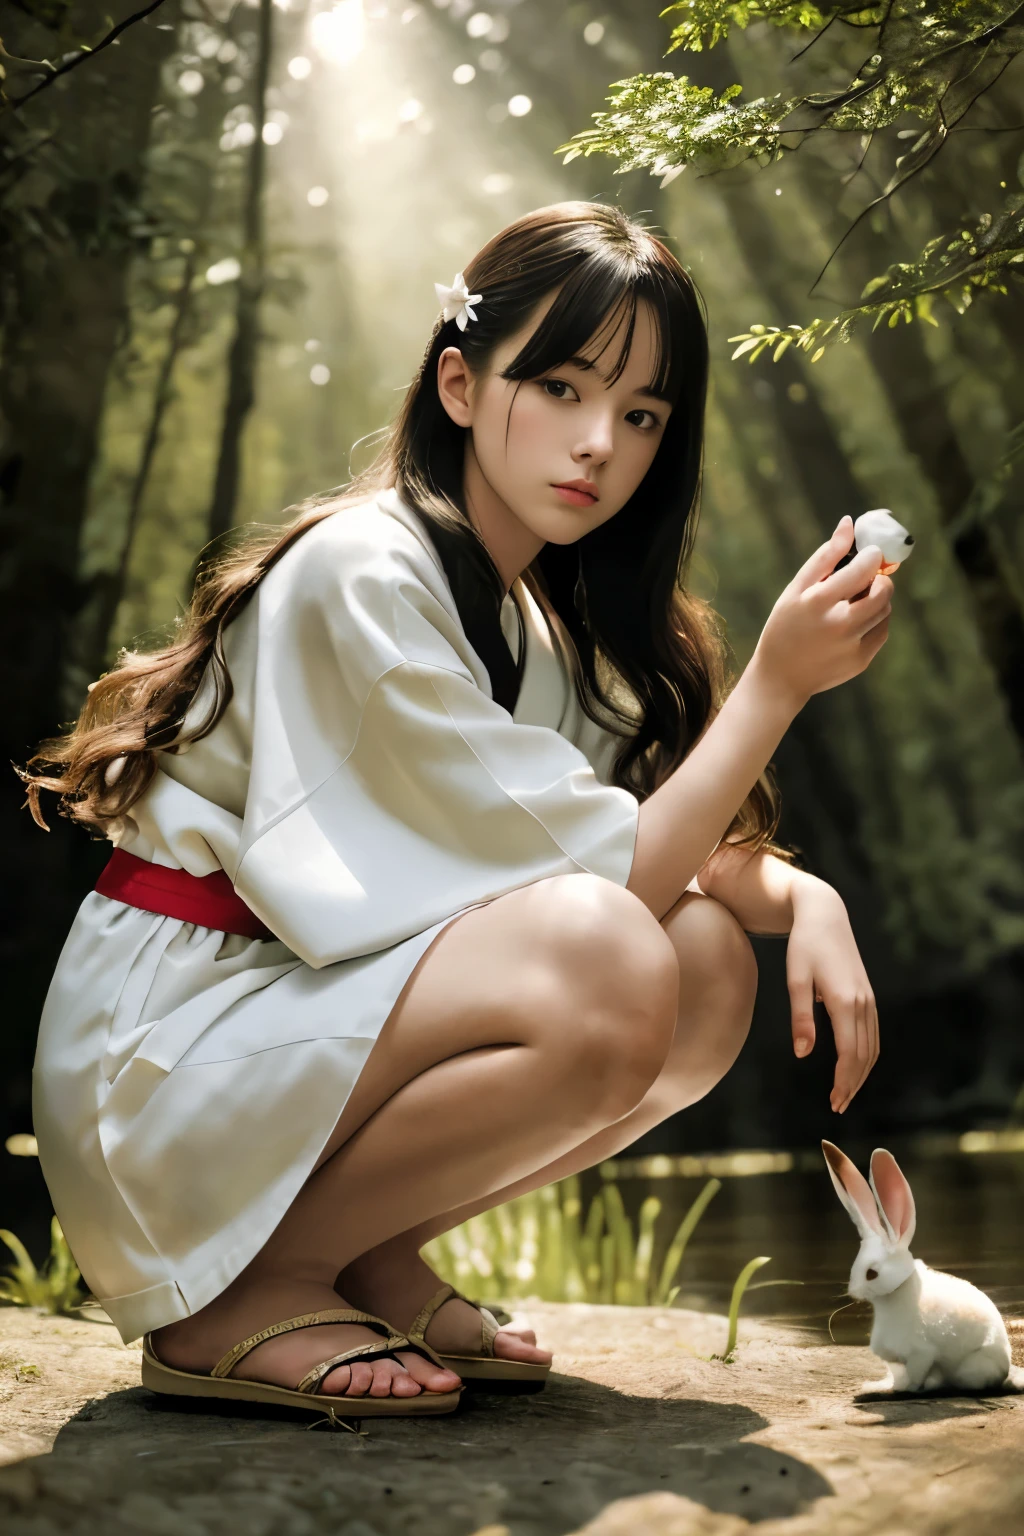 шедевр, Лучшее качество, Гиперреалистичный, Кинематографическое фото, 18-летняя девушка, бледная кожа, Японское удивительное стройное и подтянутое тело, маска самурая заколка, Украшенная юката, босая нога, держит белого кролика, длинные каштановые волнистые волосы, Большие ноги, идеальные руки, Красивое лицо, идеальное лицо, молодой, (размытый фон), Современный стиль, снизу, (съемка с низкого ракурса), выстрел в полный рост, приседание, под выстрелом, (Посмотреть средство просмотра), Глядя на зрителя,(8К, эпическая композиция, фотореалистичный, острый фокус), сложный фон, пруд в лесу в качестве фона, зеркальная камера, фольга зерна, подсветка